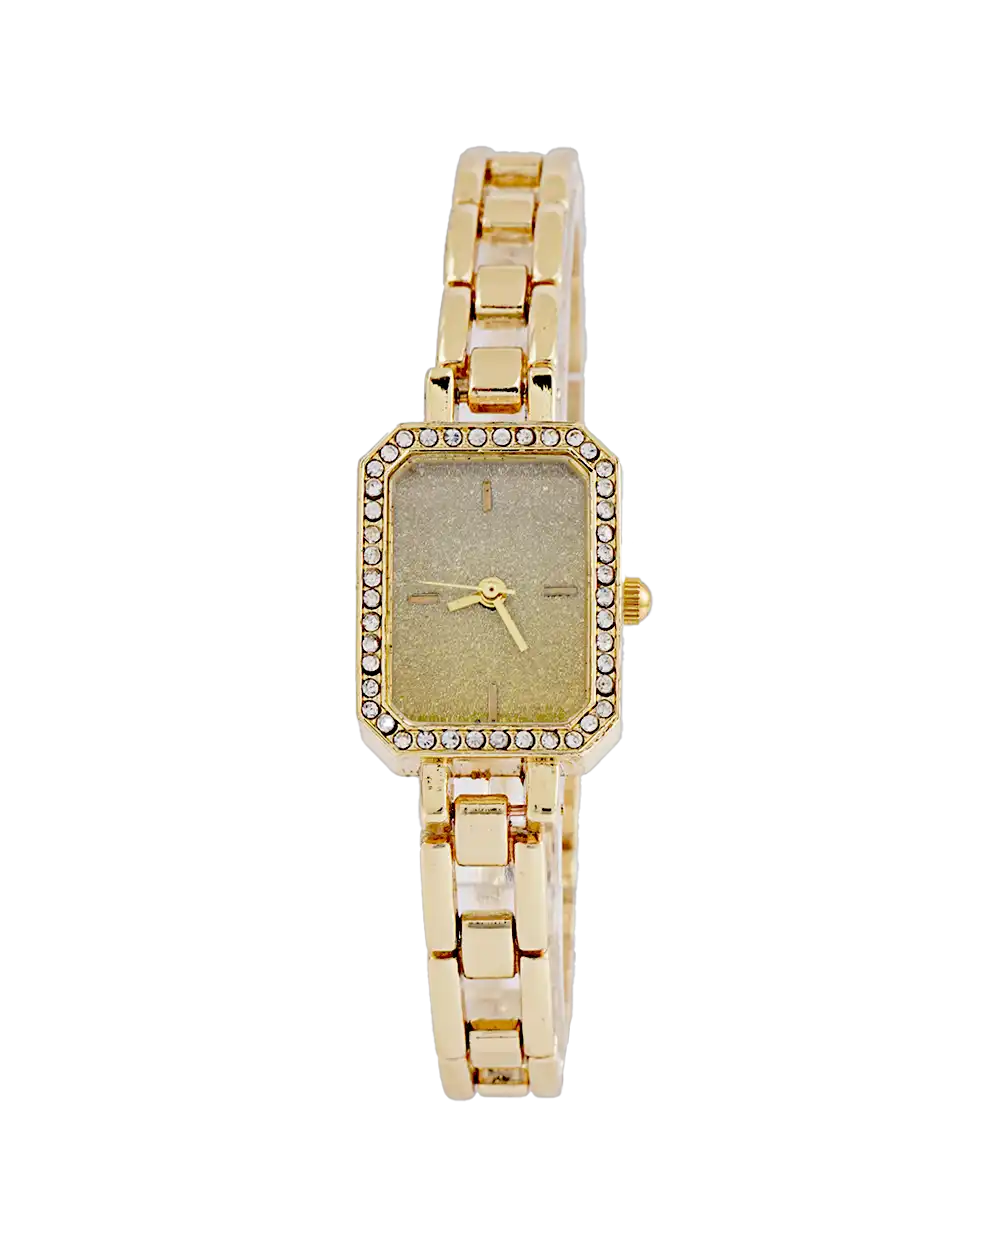 خرید ساعت مچی دستبندی زنانه کارتیه CARTIER مدل 1754 رنگ طلایی با بهترین قیمت به همراه ارسال رایگان و جعبه ی ساعت | ساعت کارتیر زنانه دستبندی طلایی